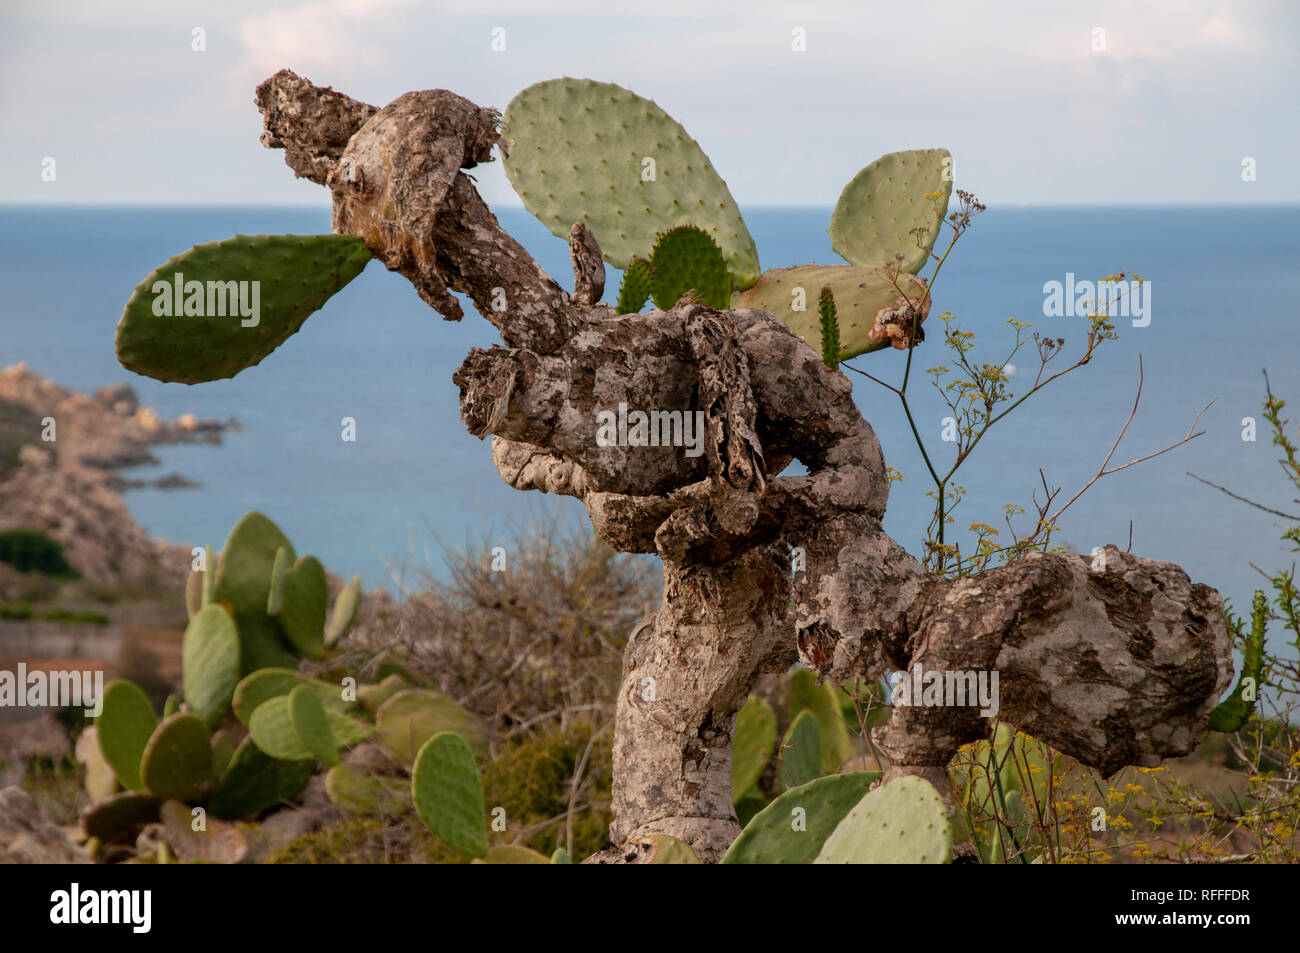 Un cactus Opuntia ficus-indica (famille des Cactaceae) sur Gozo, Malte. Communément appelé figuier de Barbarie, Indian Fig, Barbary Fig. Banque D'Images